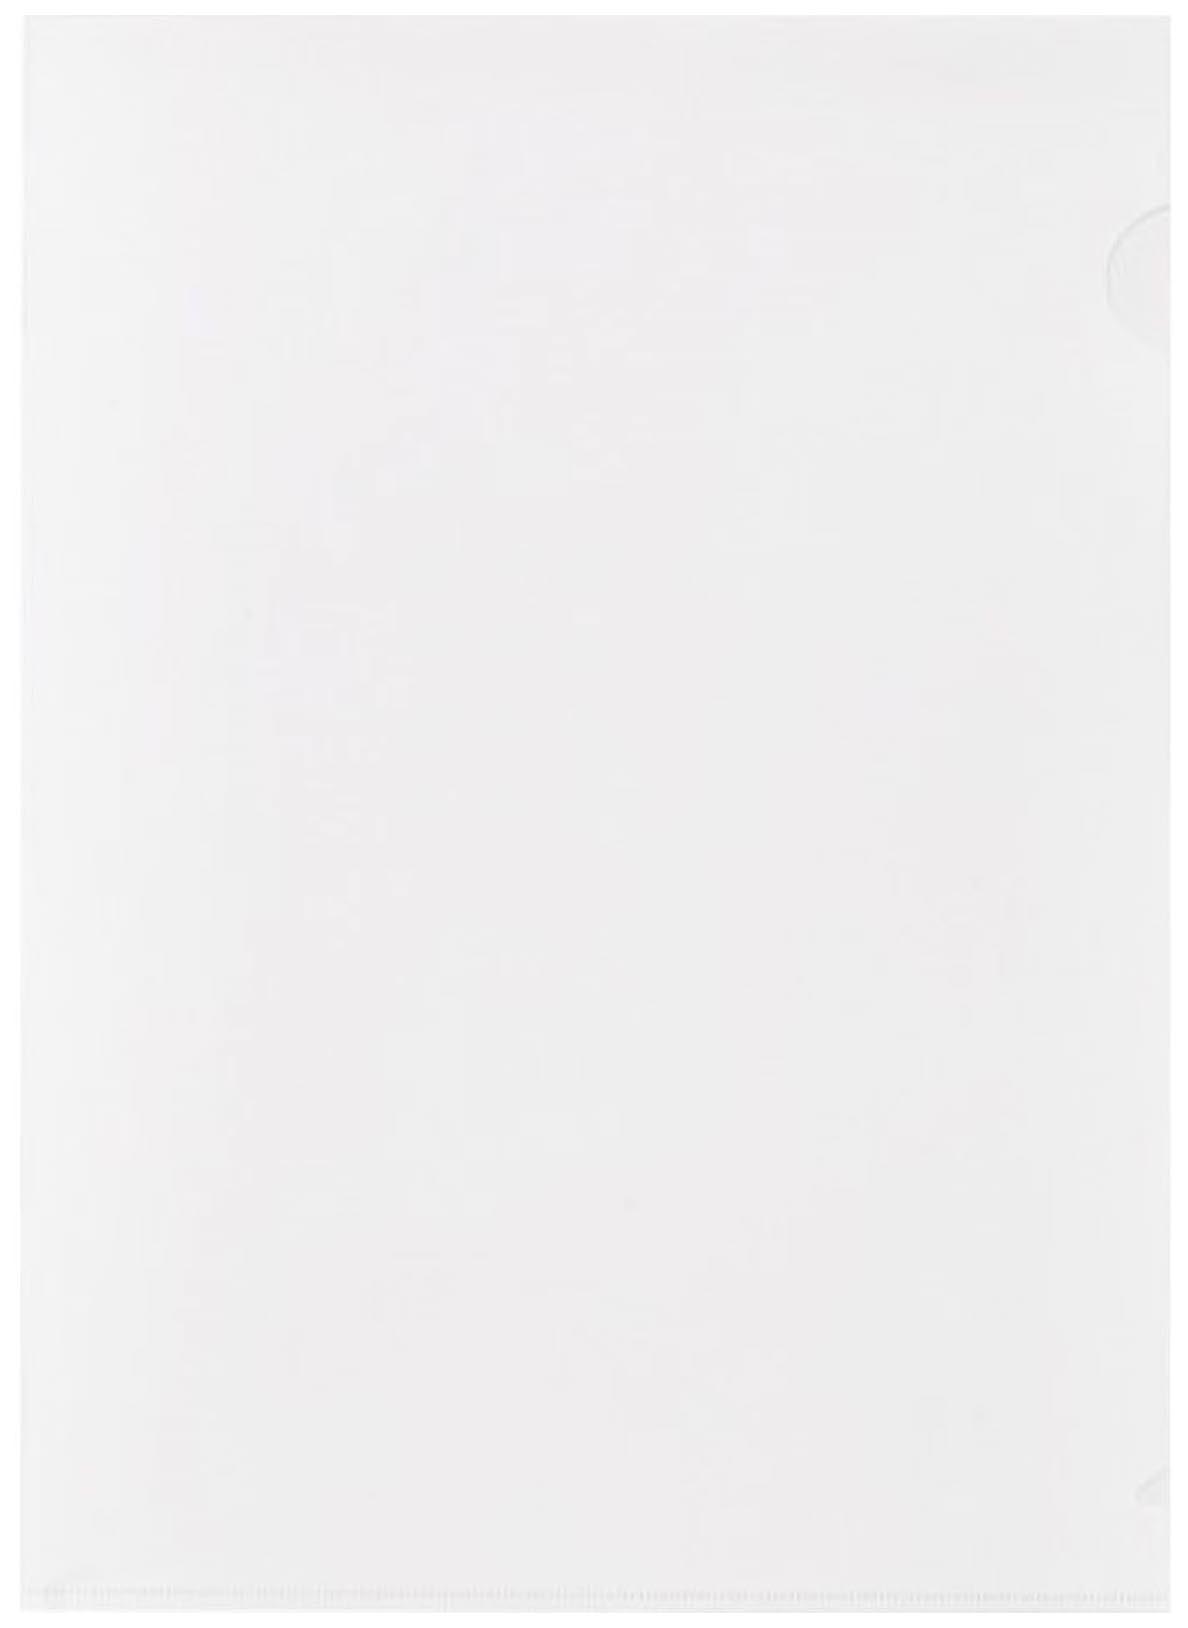 фото Папка-уголок жесткий пластик белая матовая 180 мкм (10 штук в упаковке), 627974 attache